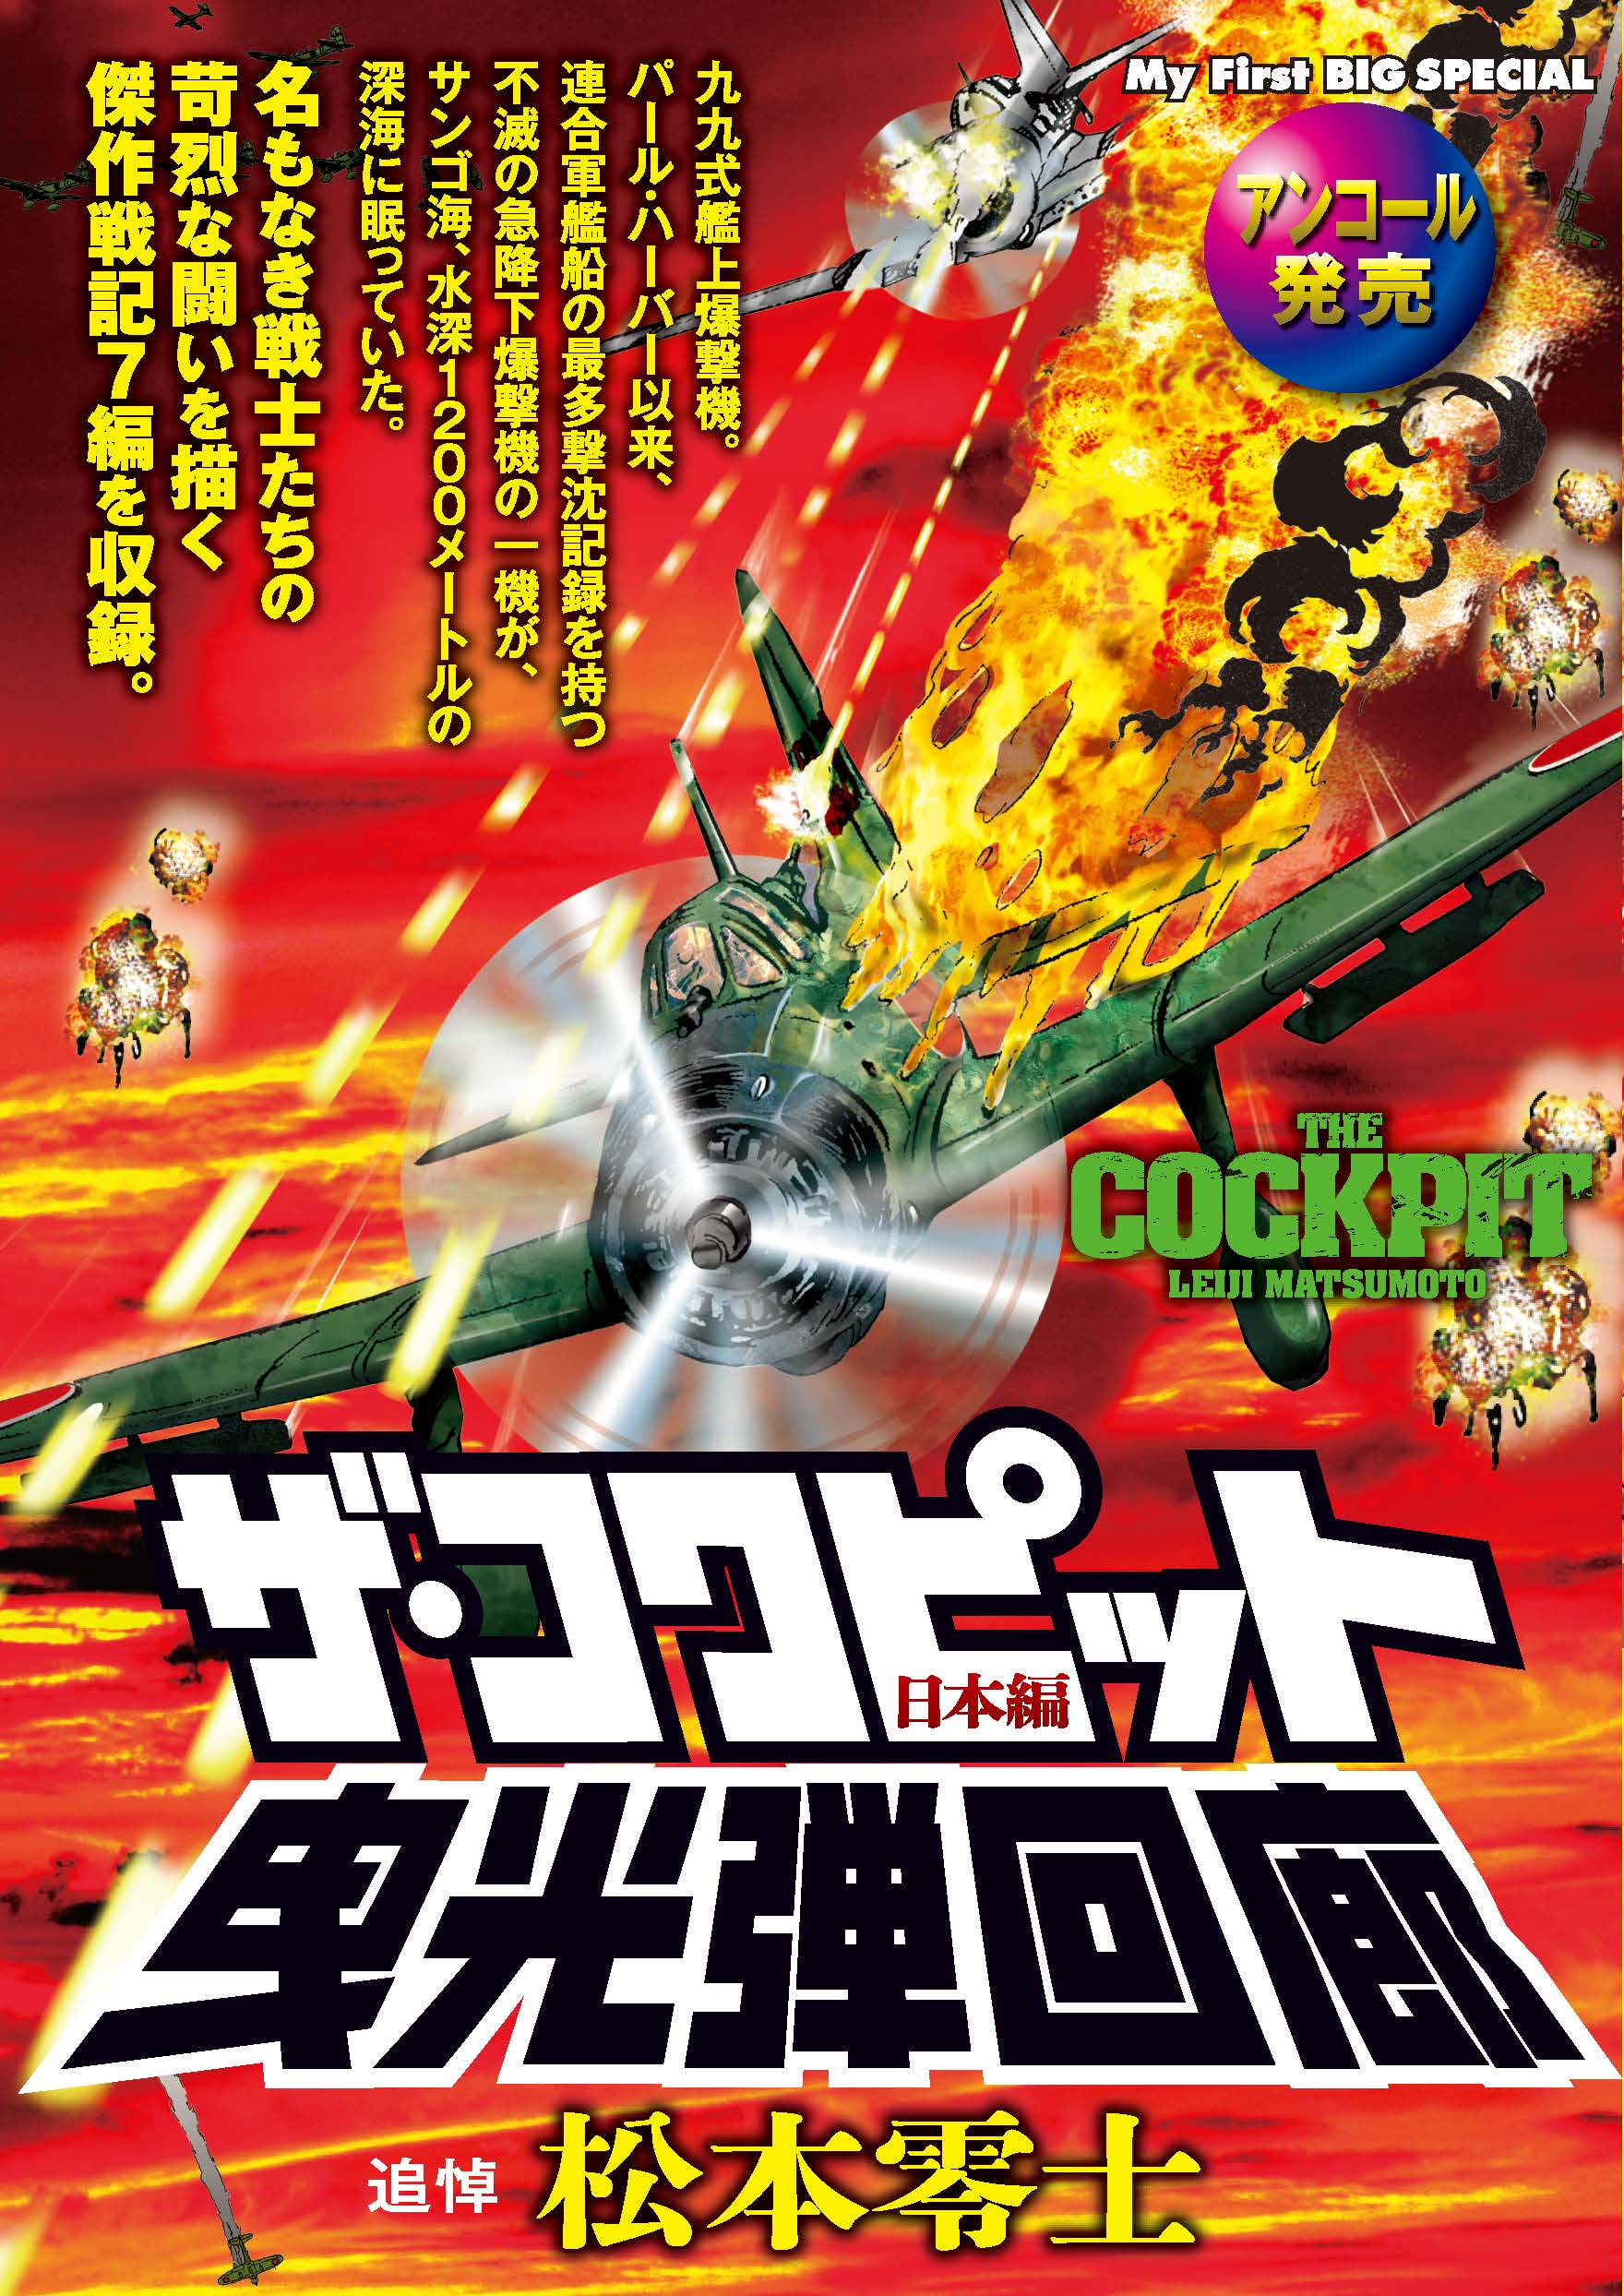 【名作漫画】松本零士が『音速雷撃隊』で描いた“戦場の狂気”「敵も味方も、みんな大バカだ…」